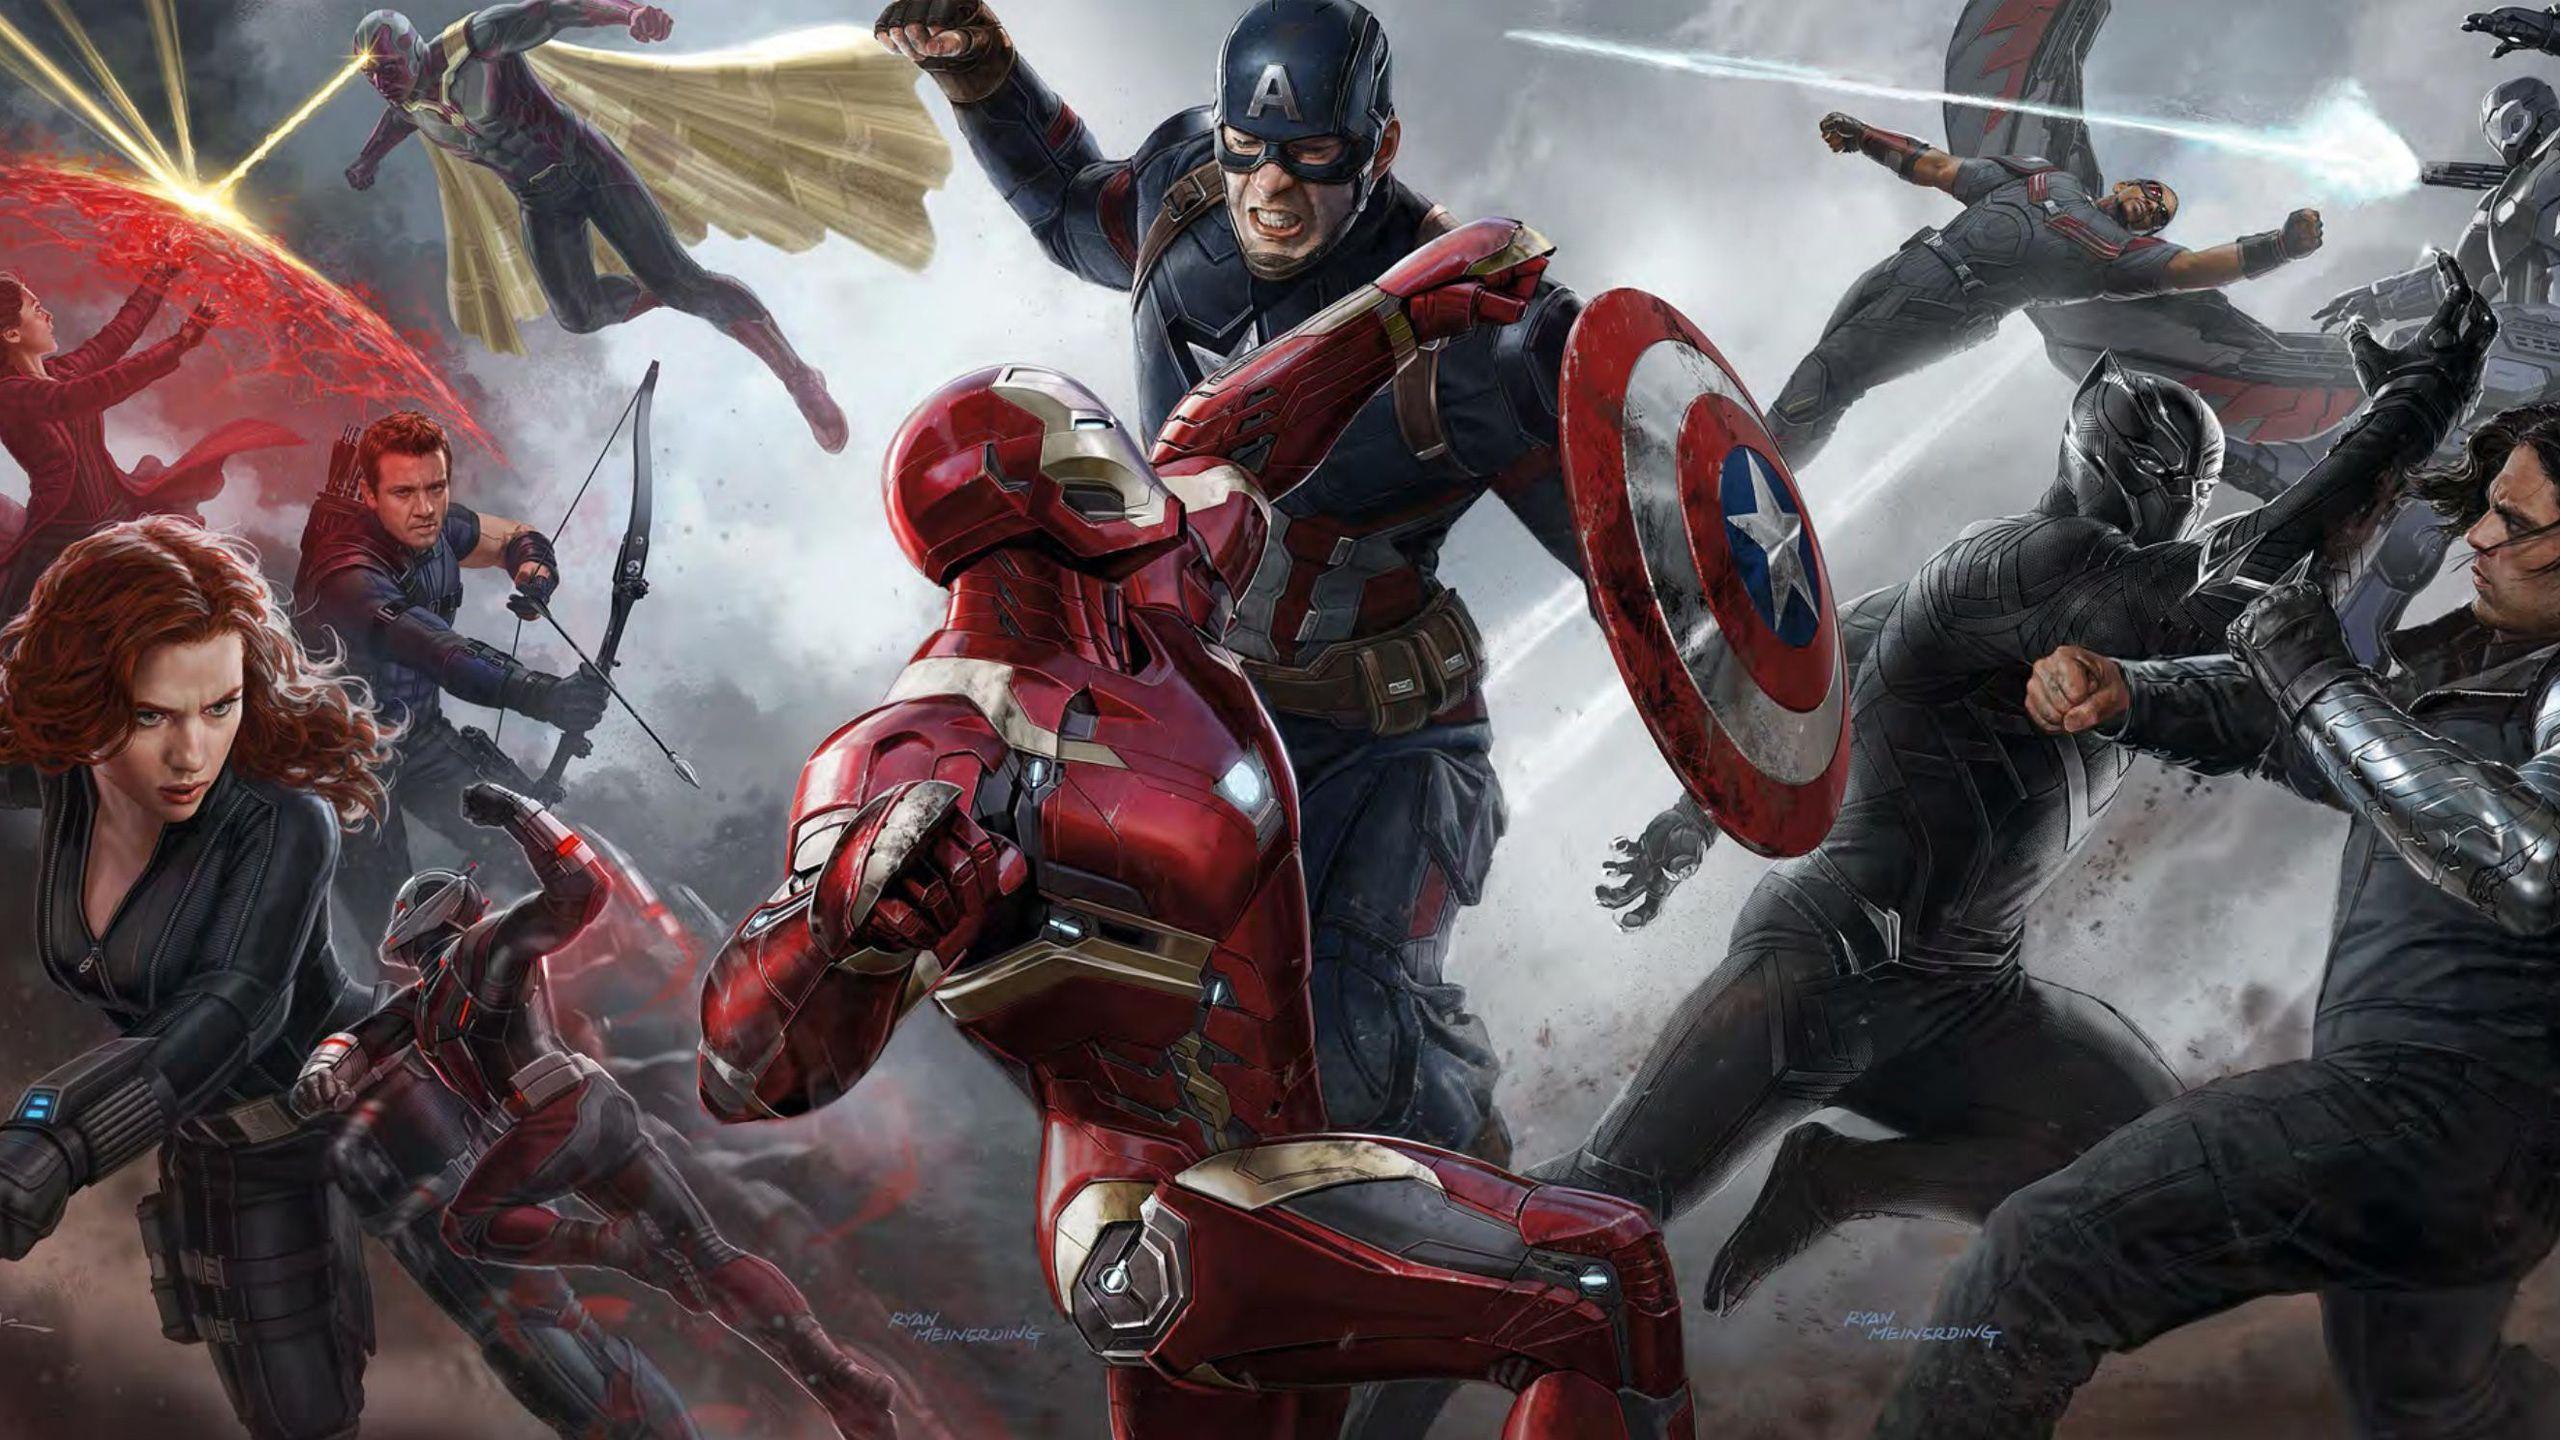 Captain America Civil War p Wallpapers